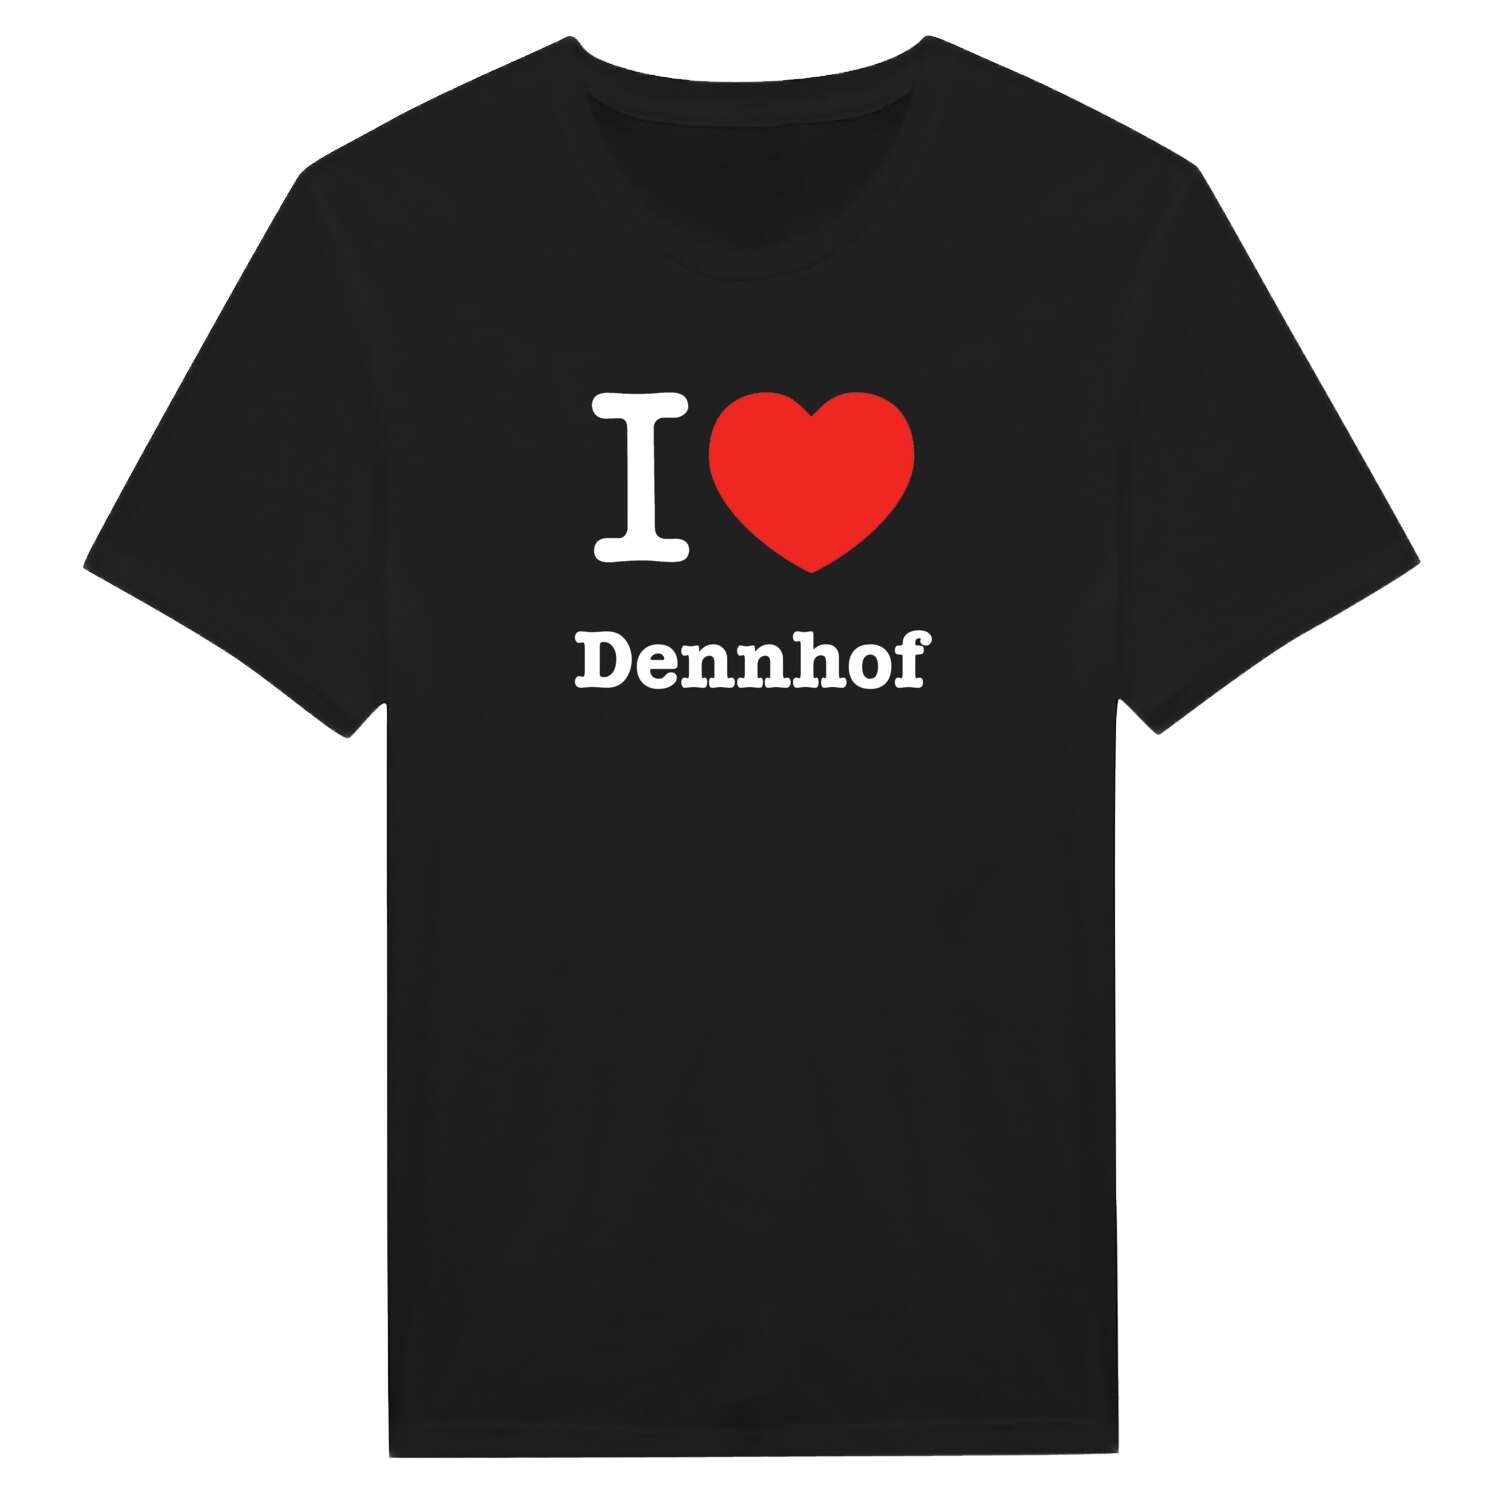 Dennhof T-Shirt »I love«